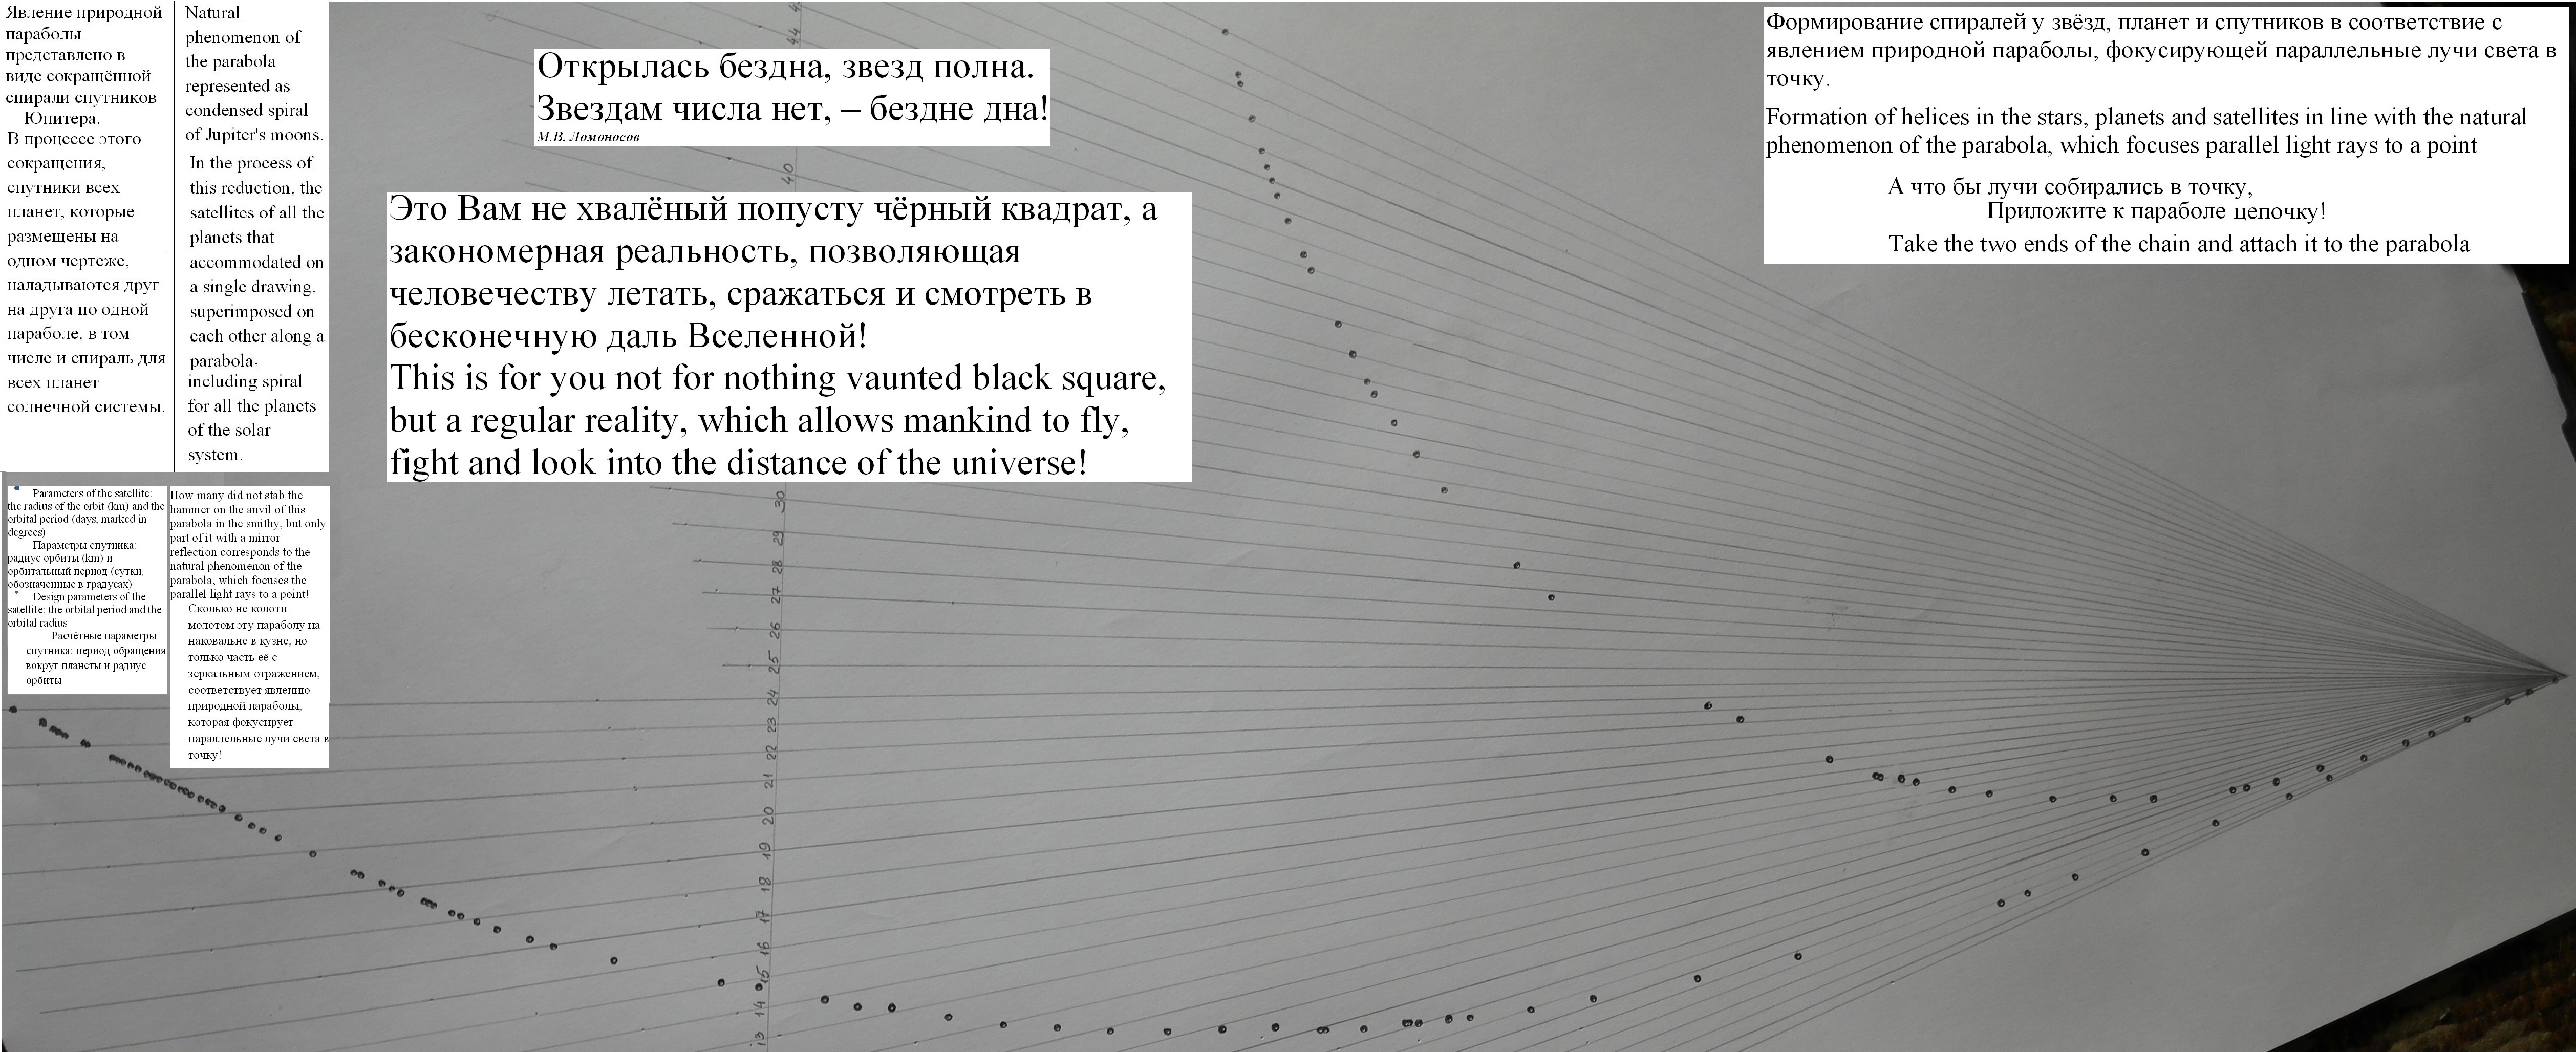 16 Явление природной параболы представлено в виде сокращённой спирали спутников.jpg